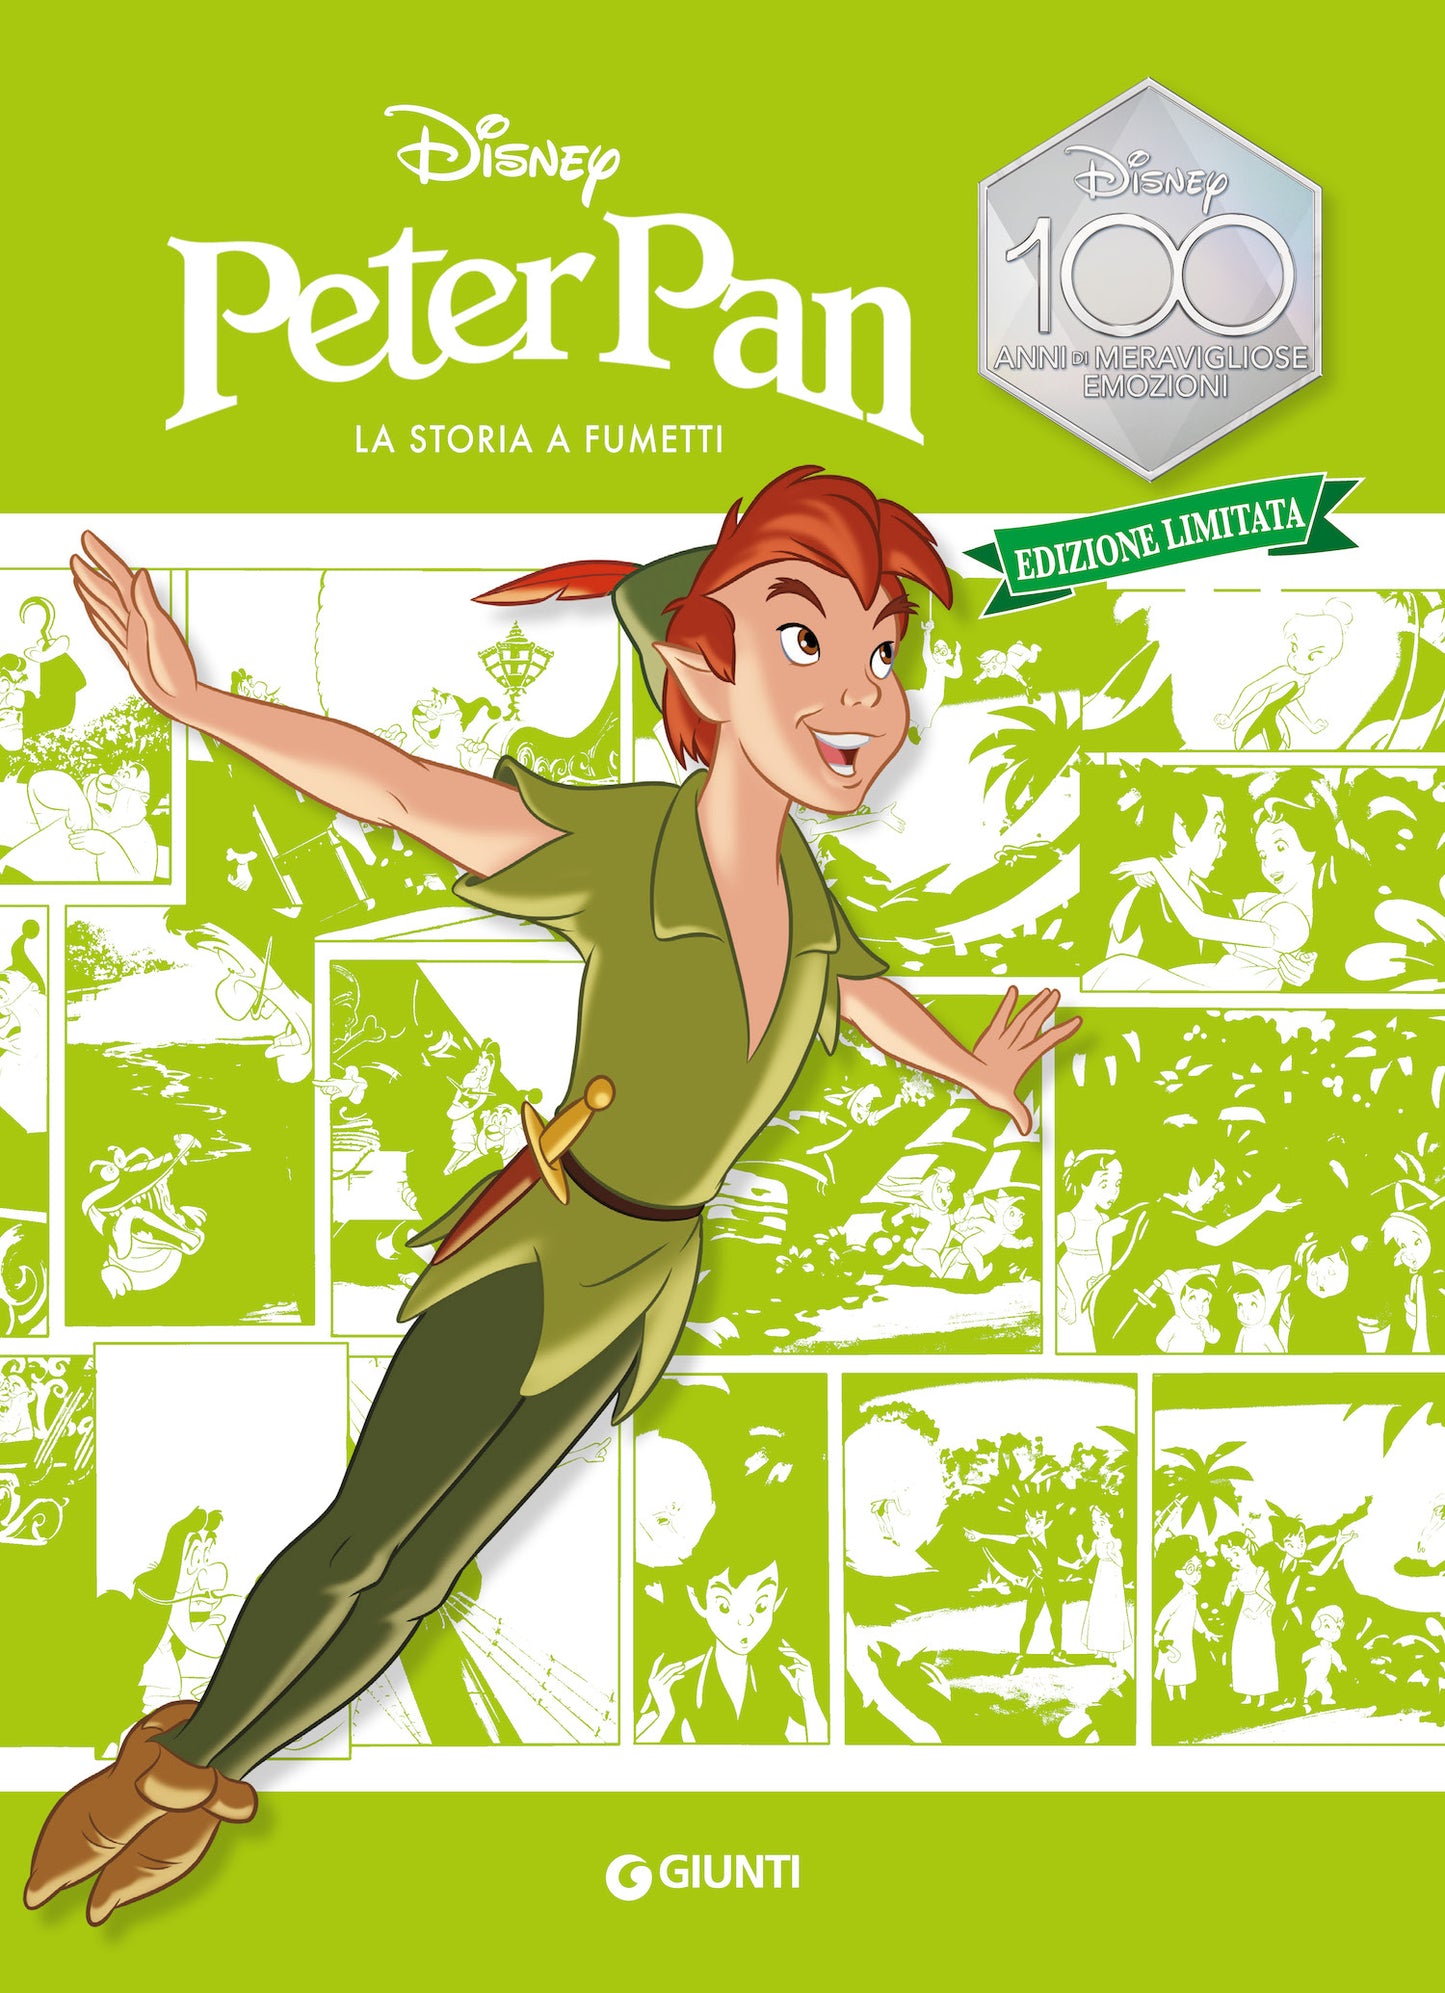 Peter Pan La storia a fumetti Edizione limitata::Disney 100 Anni di meravigliose emozioni